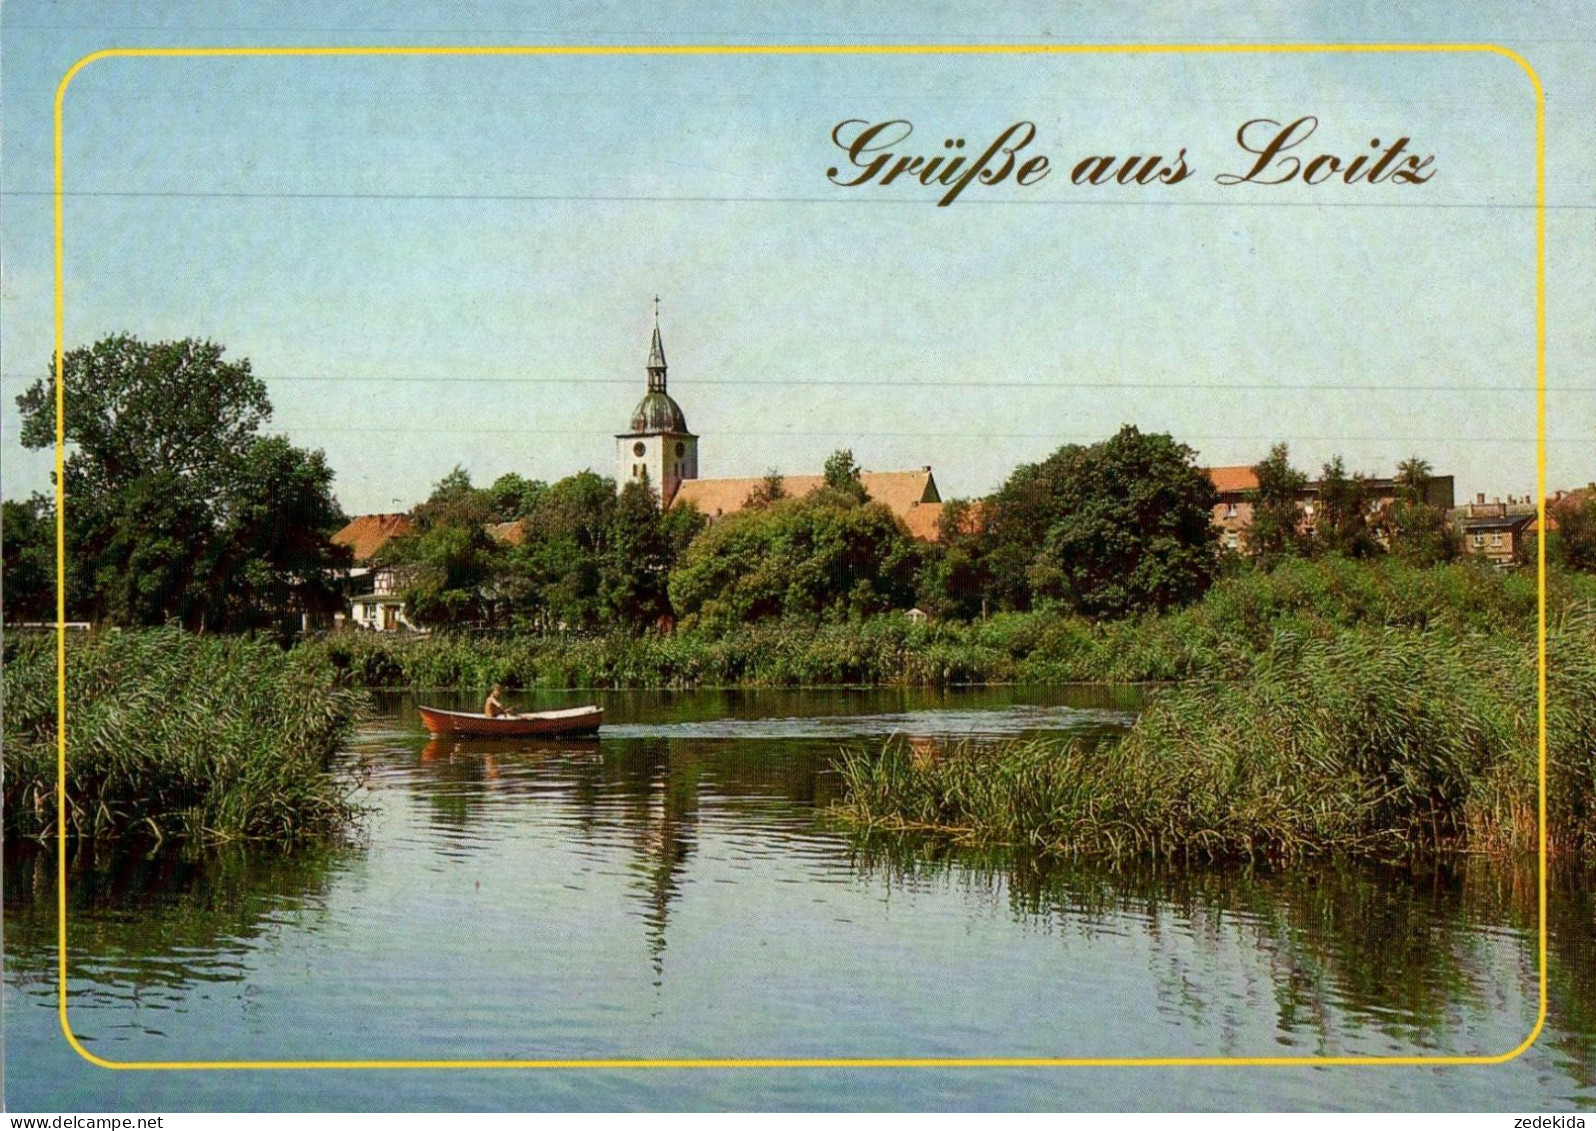 H1229 - TOP Loitz - Bild Und Heimat Reichenbach Qualitätskarte - Greifswald